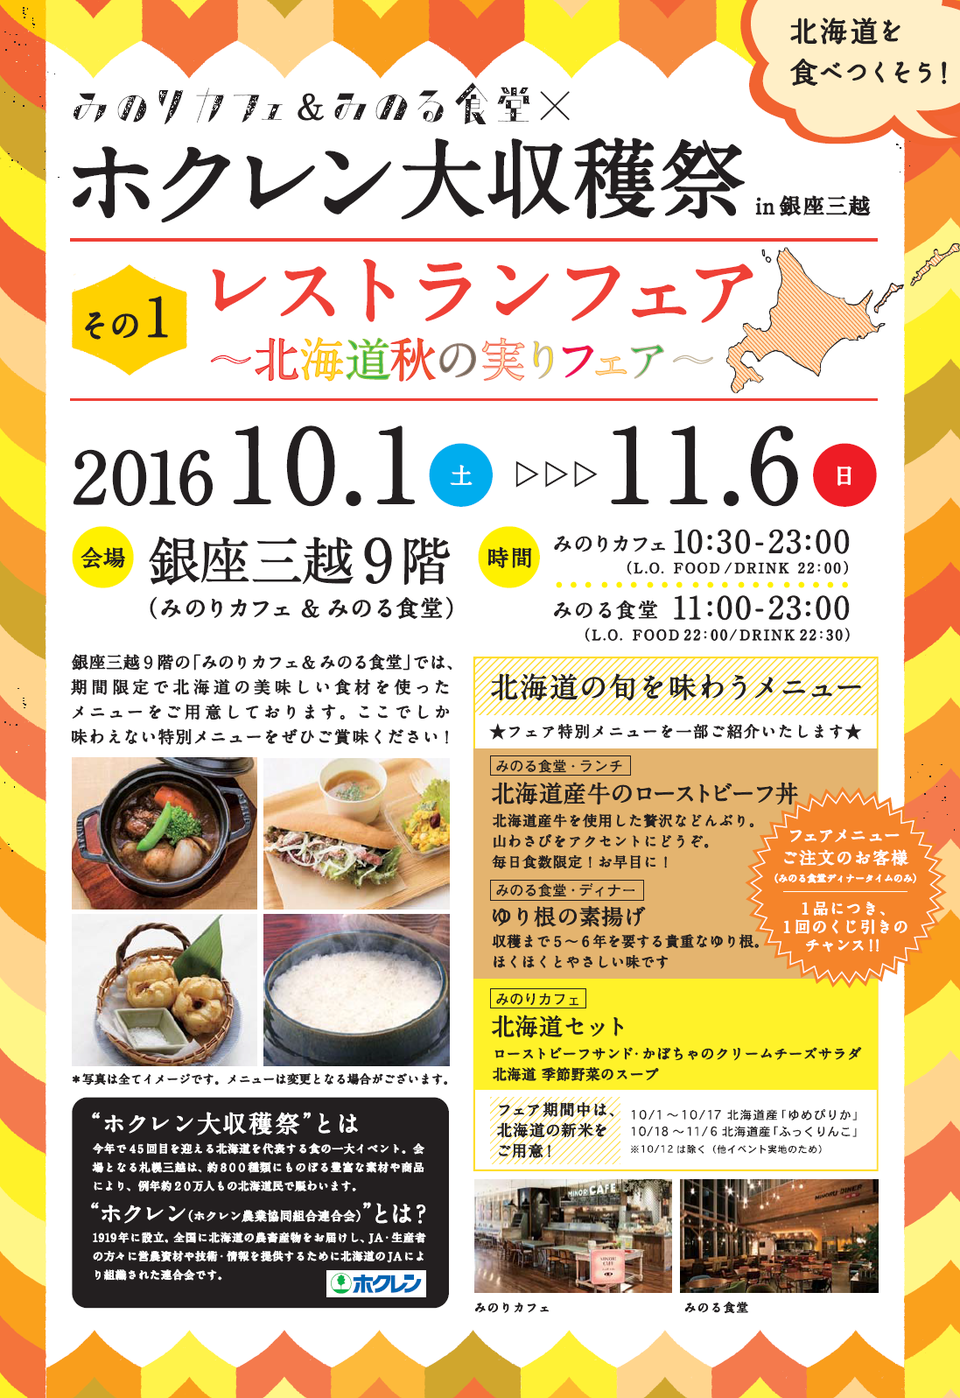 20161001-1106_レストランフェアちらし - コピー.png